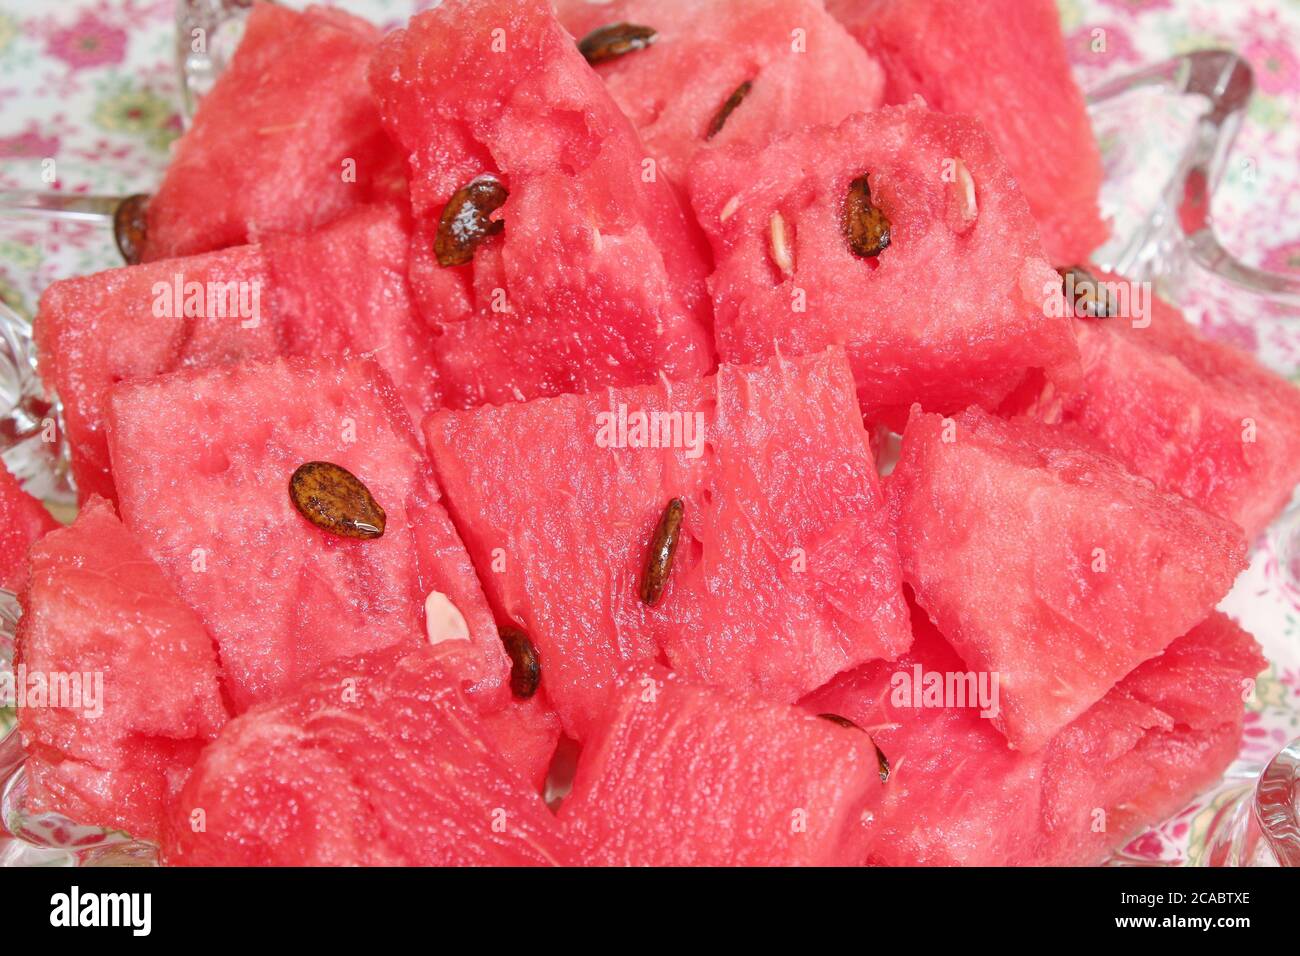 Fresh, ripe, watermelon in a glass dish Stock Photo